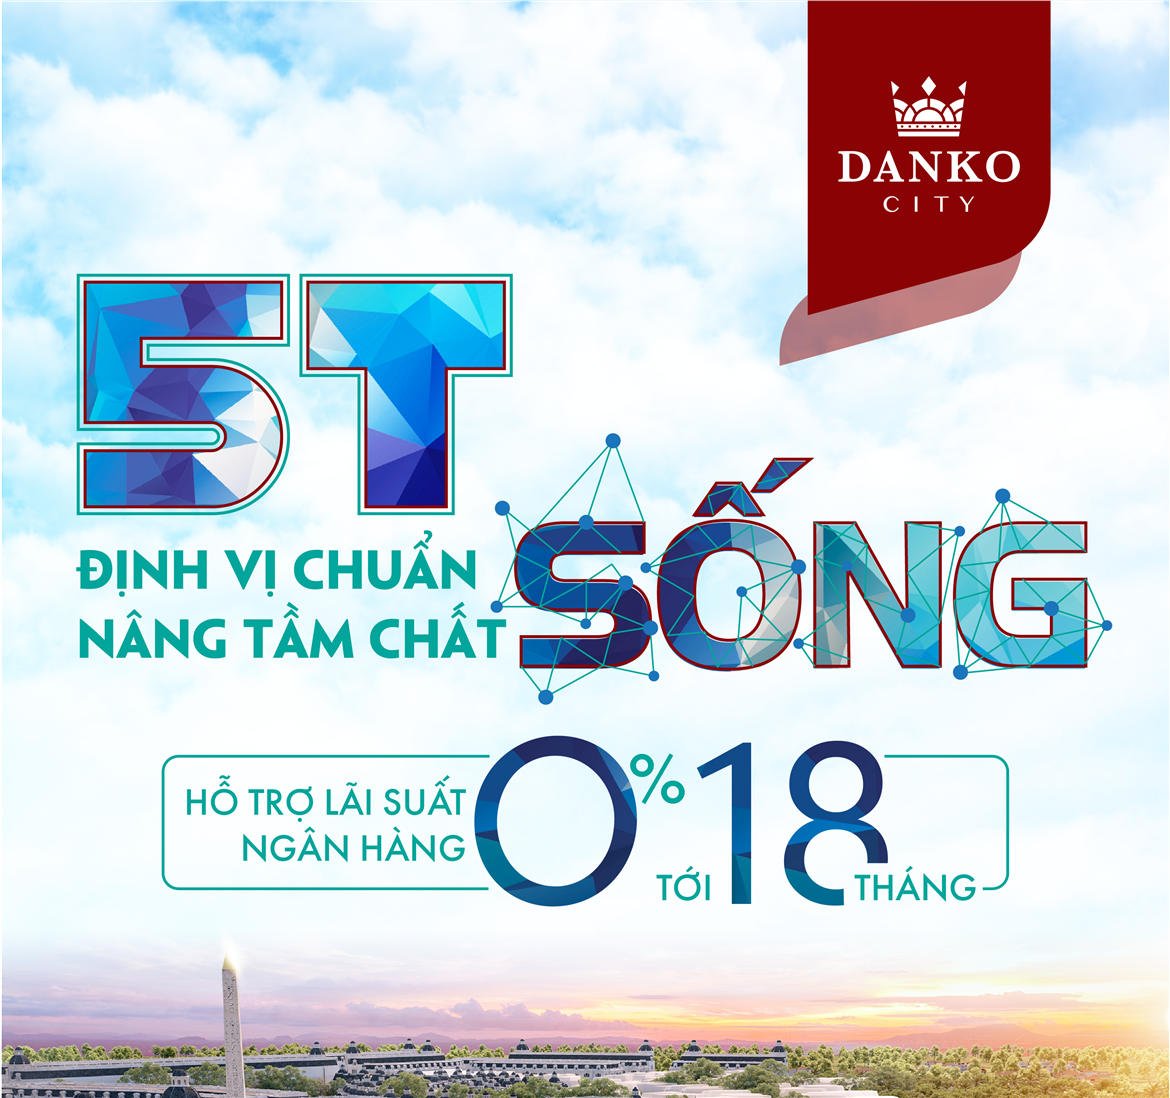 Tiến độ dự án Danko City Thái Nguyên - Ngày 1/7/2021